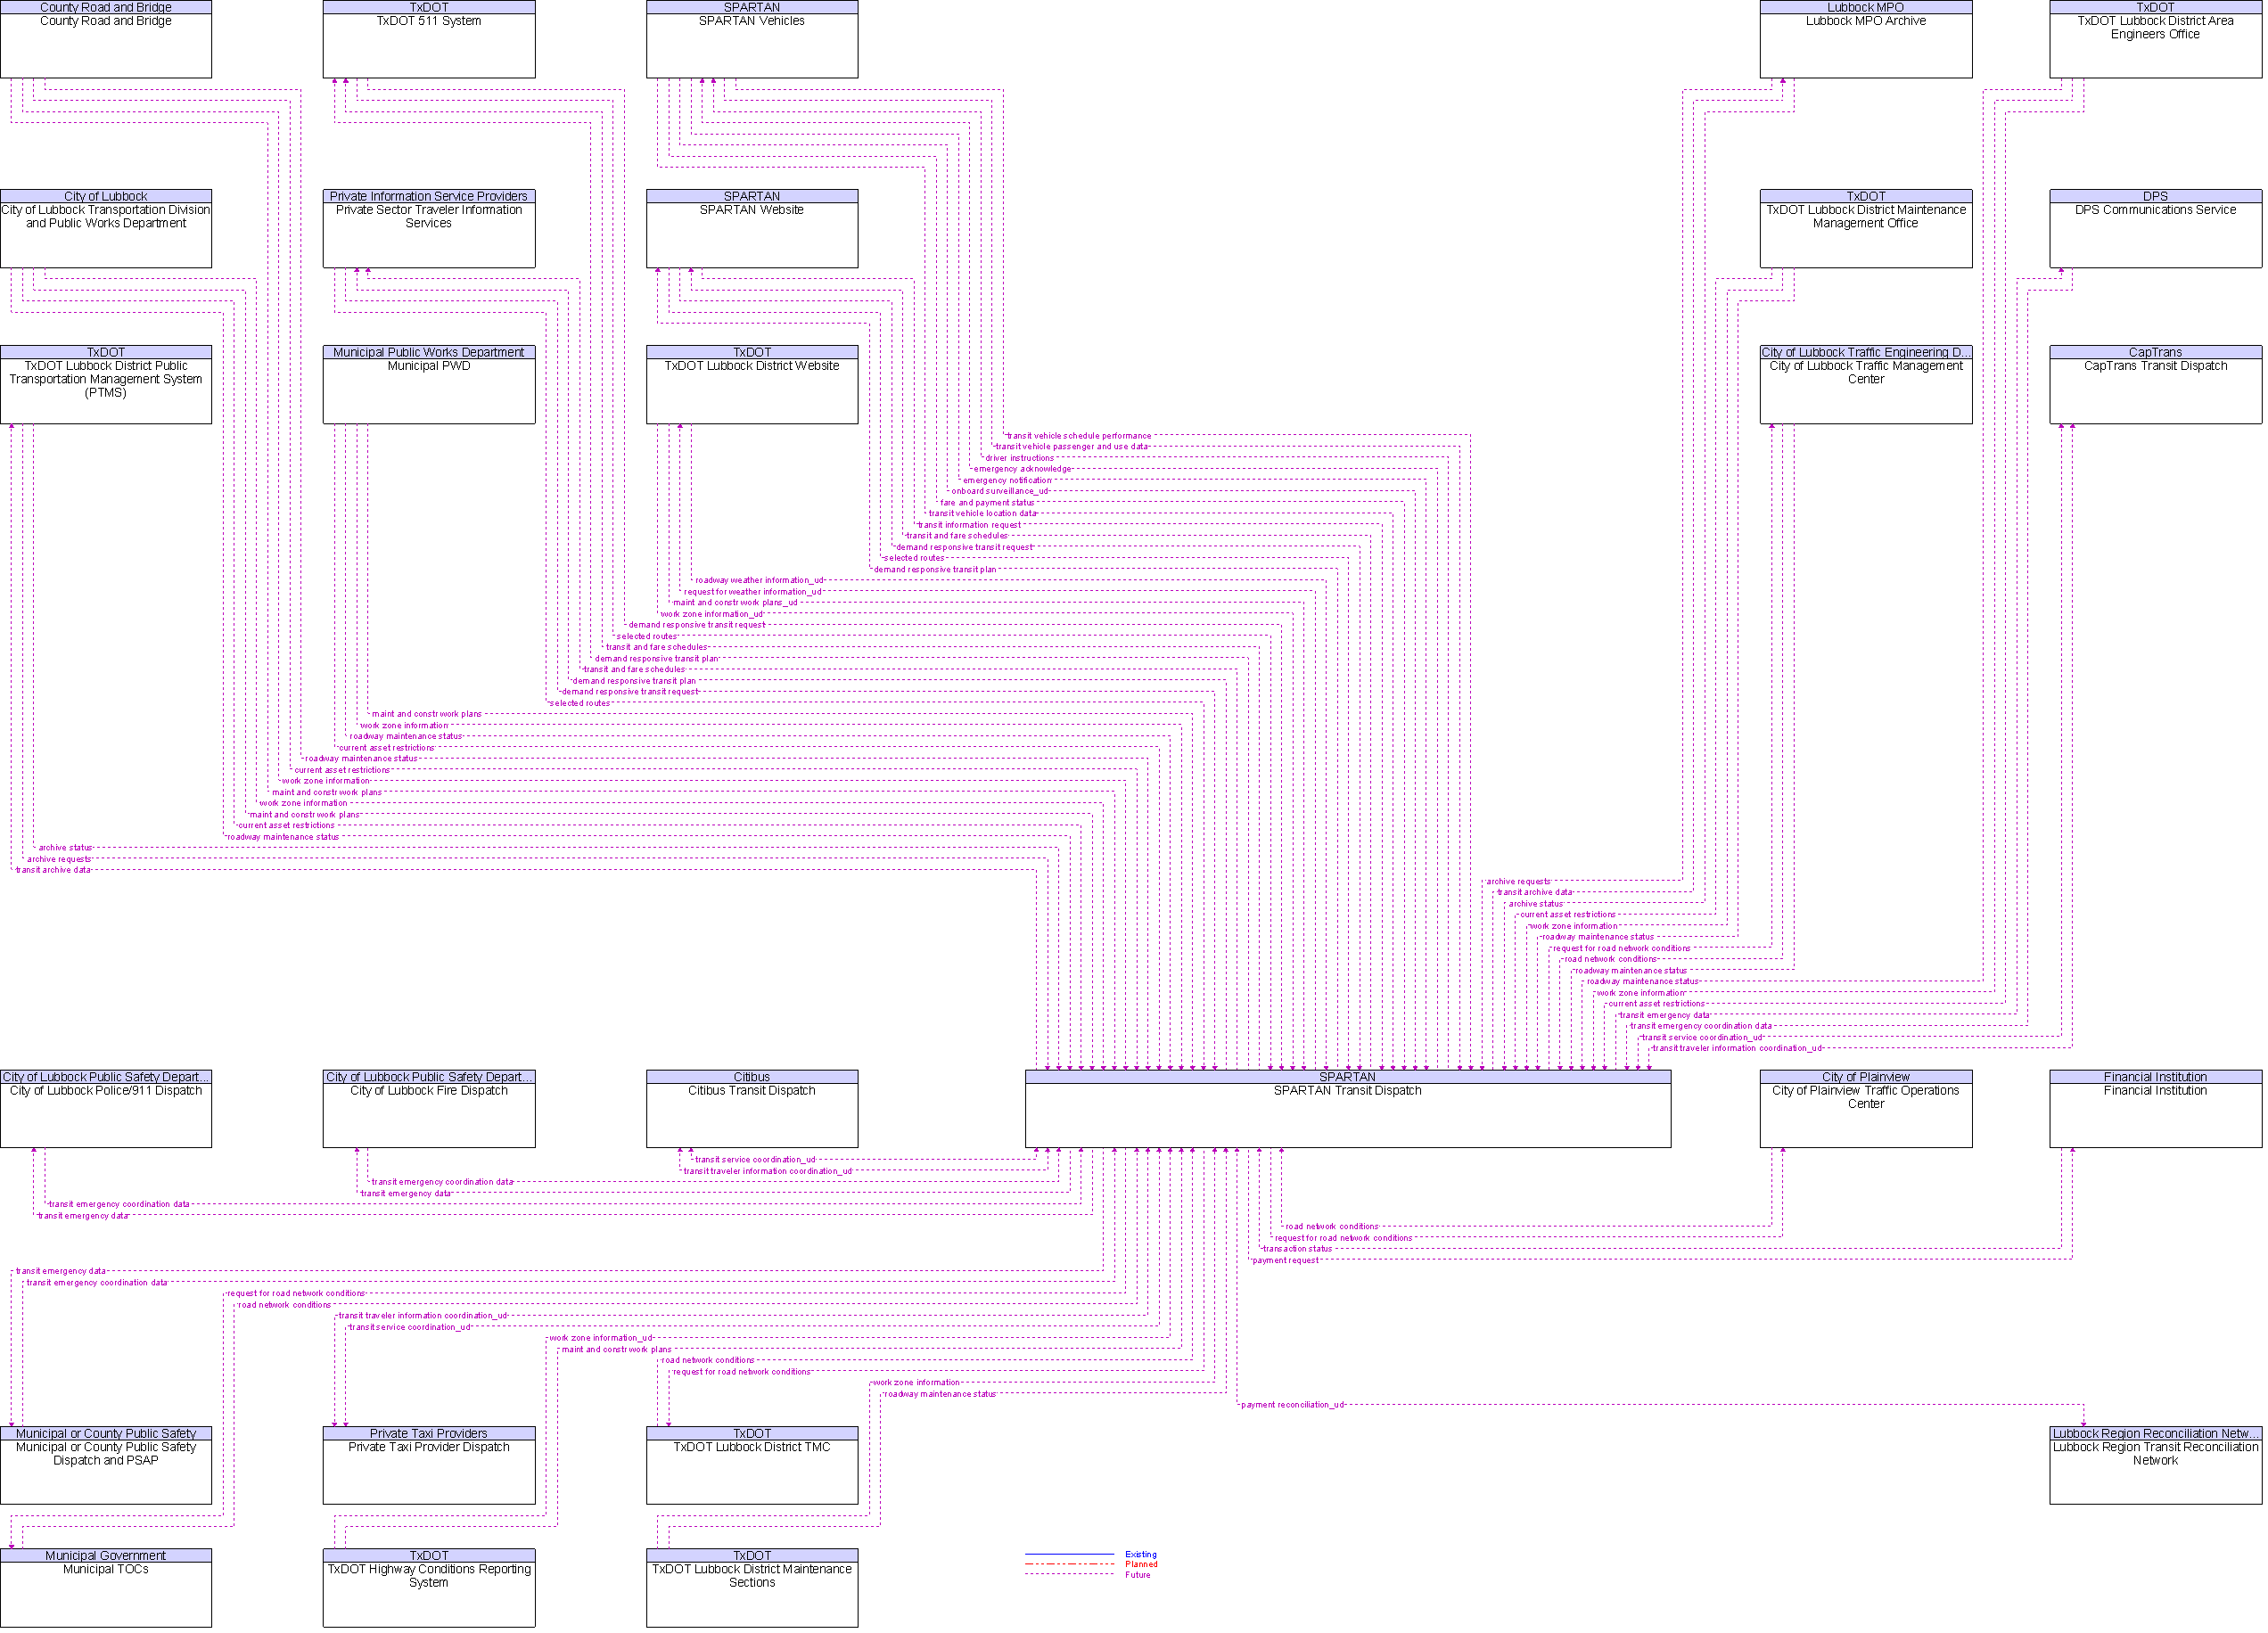 Context Diagram for SPARTAN Transit Dispatch